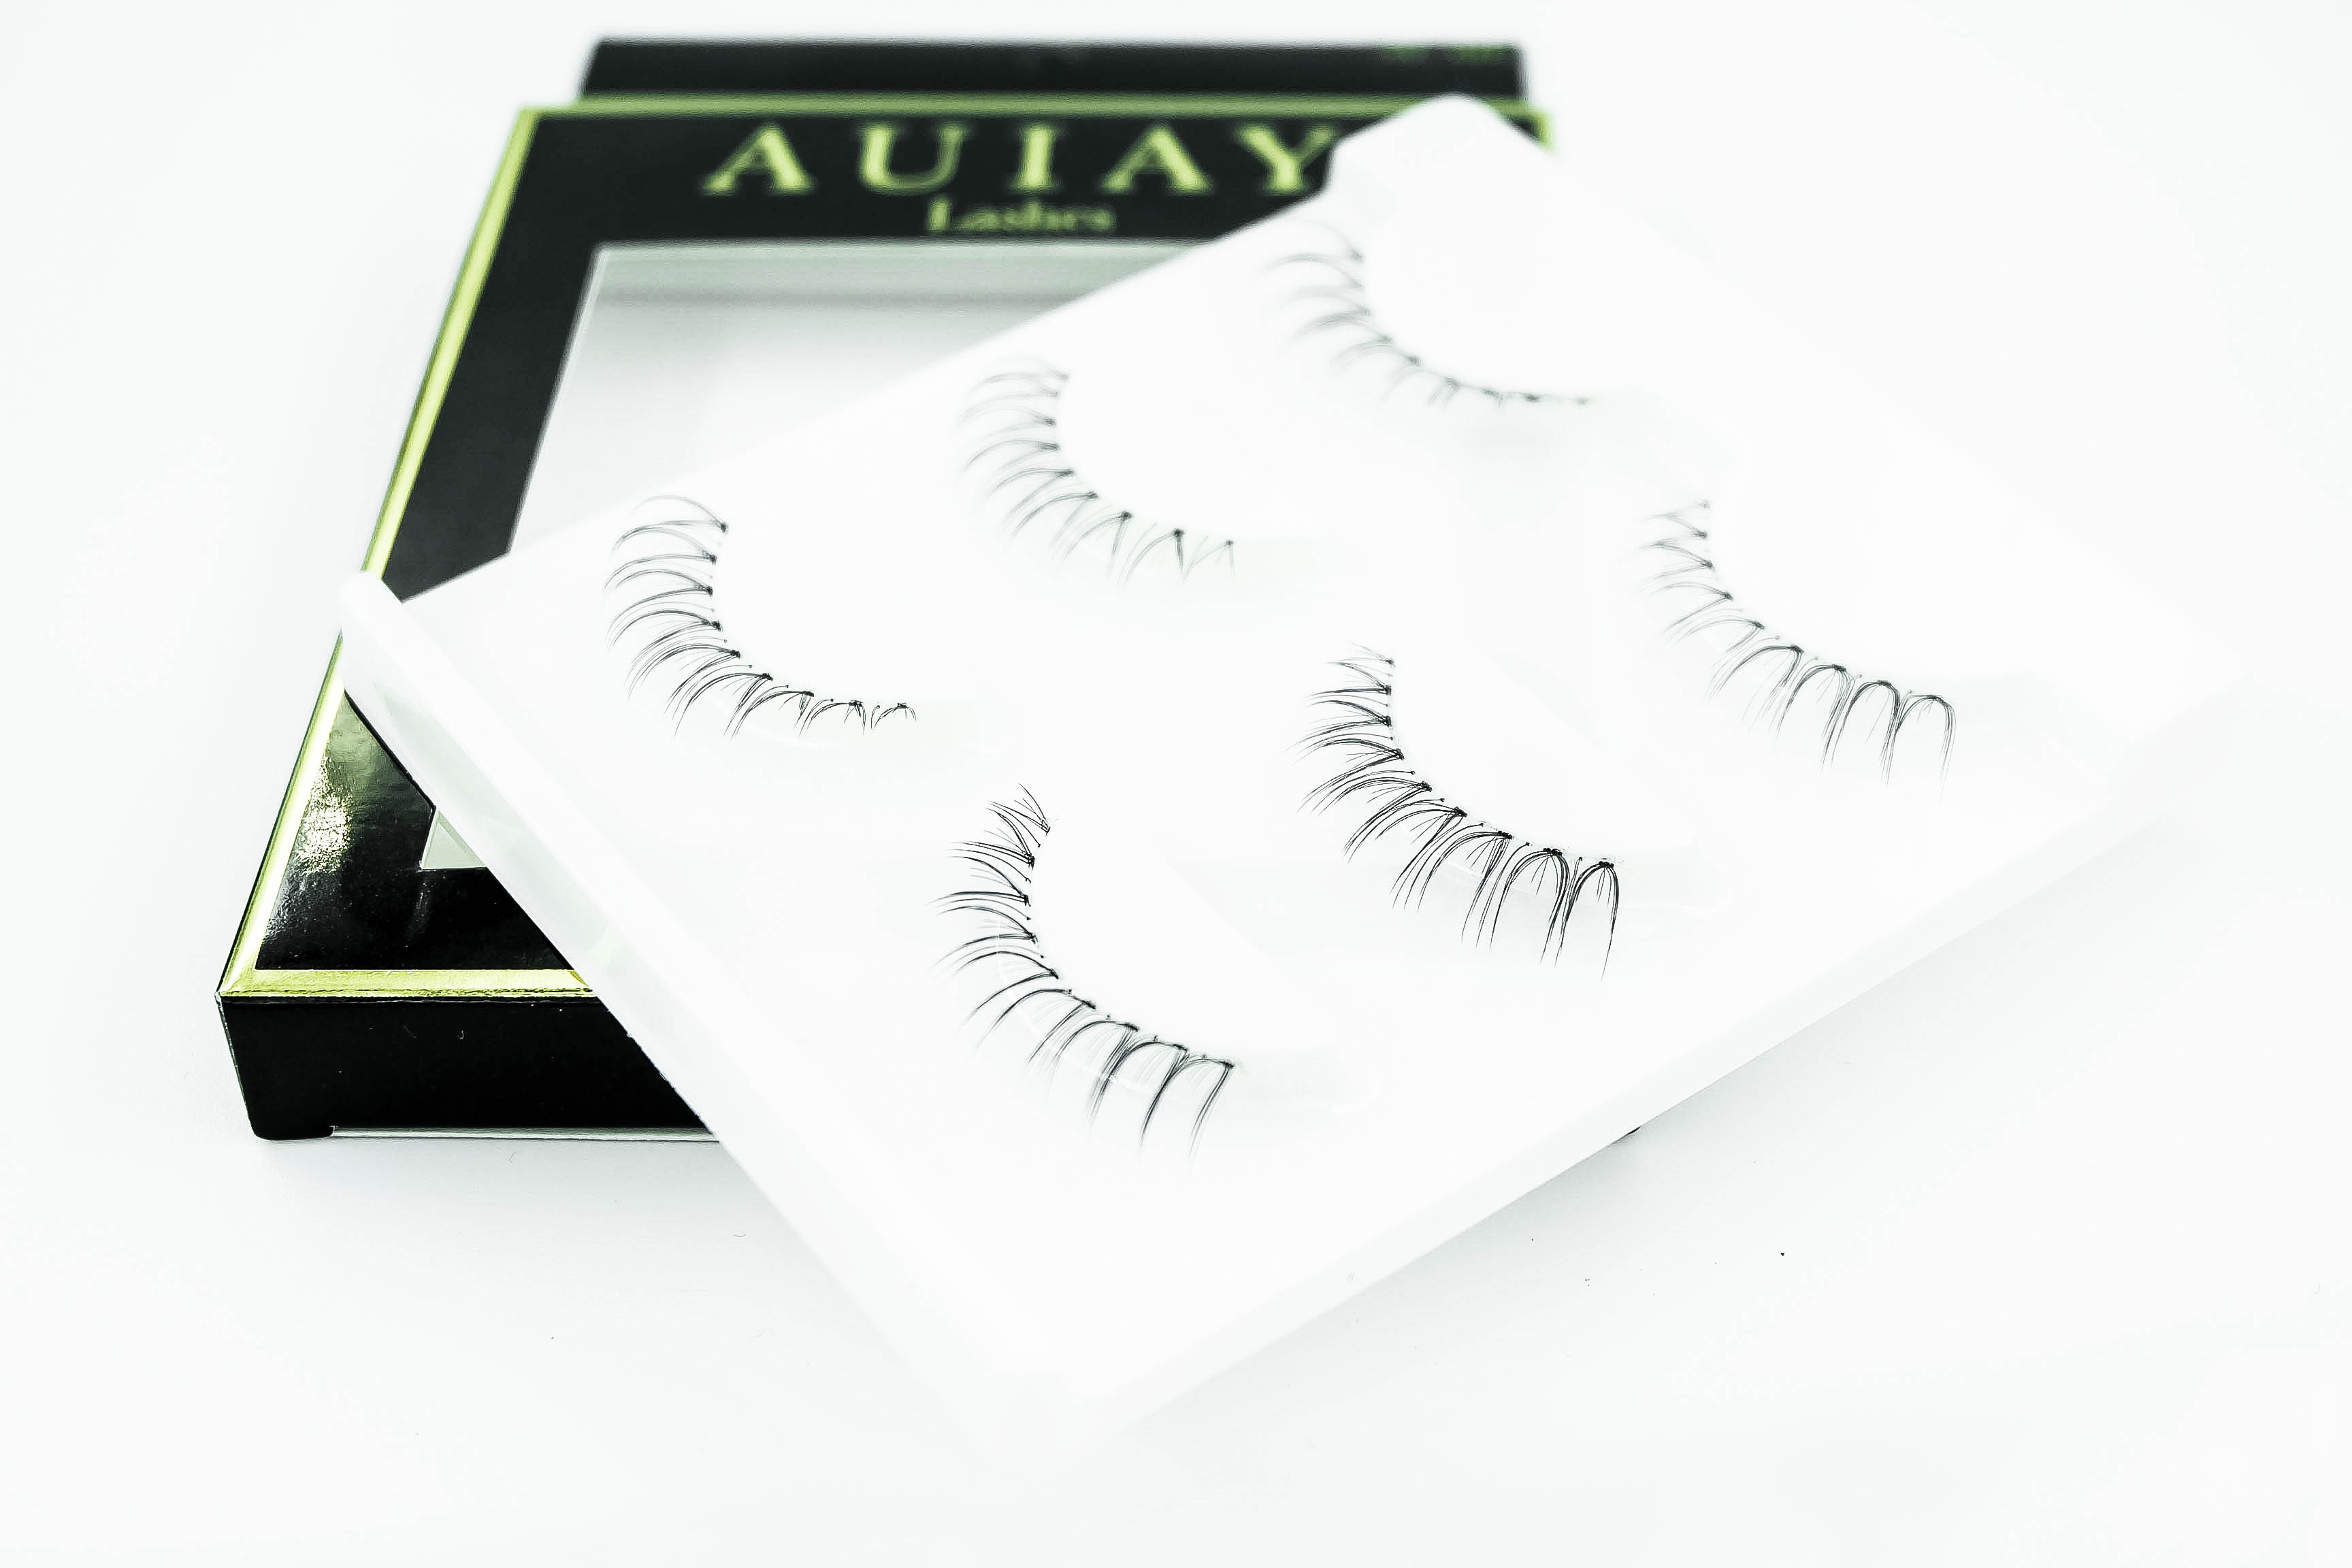 ขนตาปลอม AUIAY ชุดขนตาล่าง AL-A01 ราคากล่องละ 150 บาท